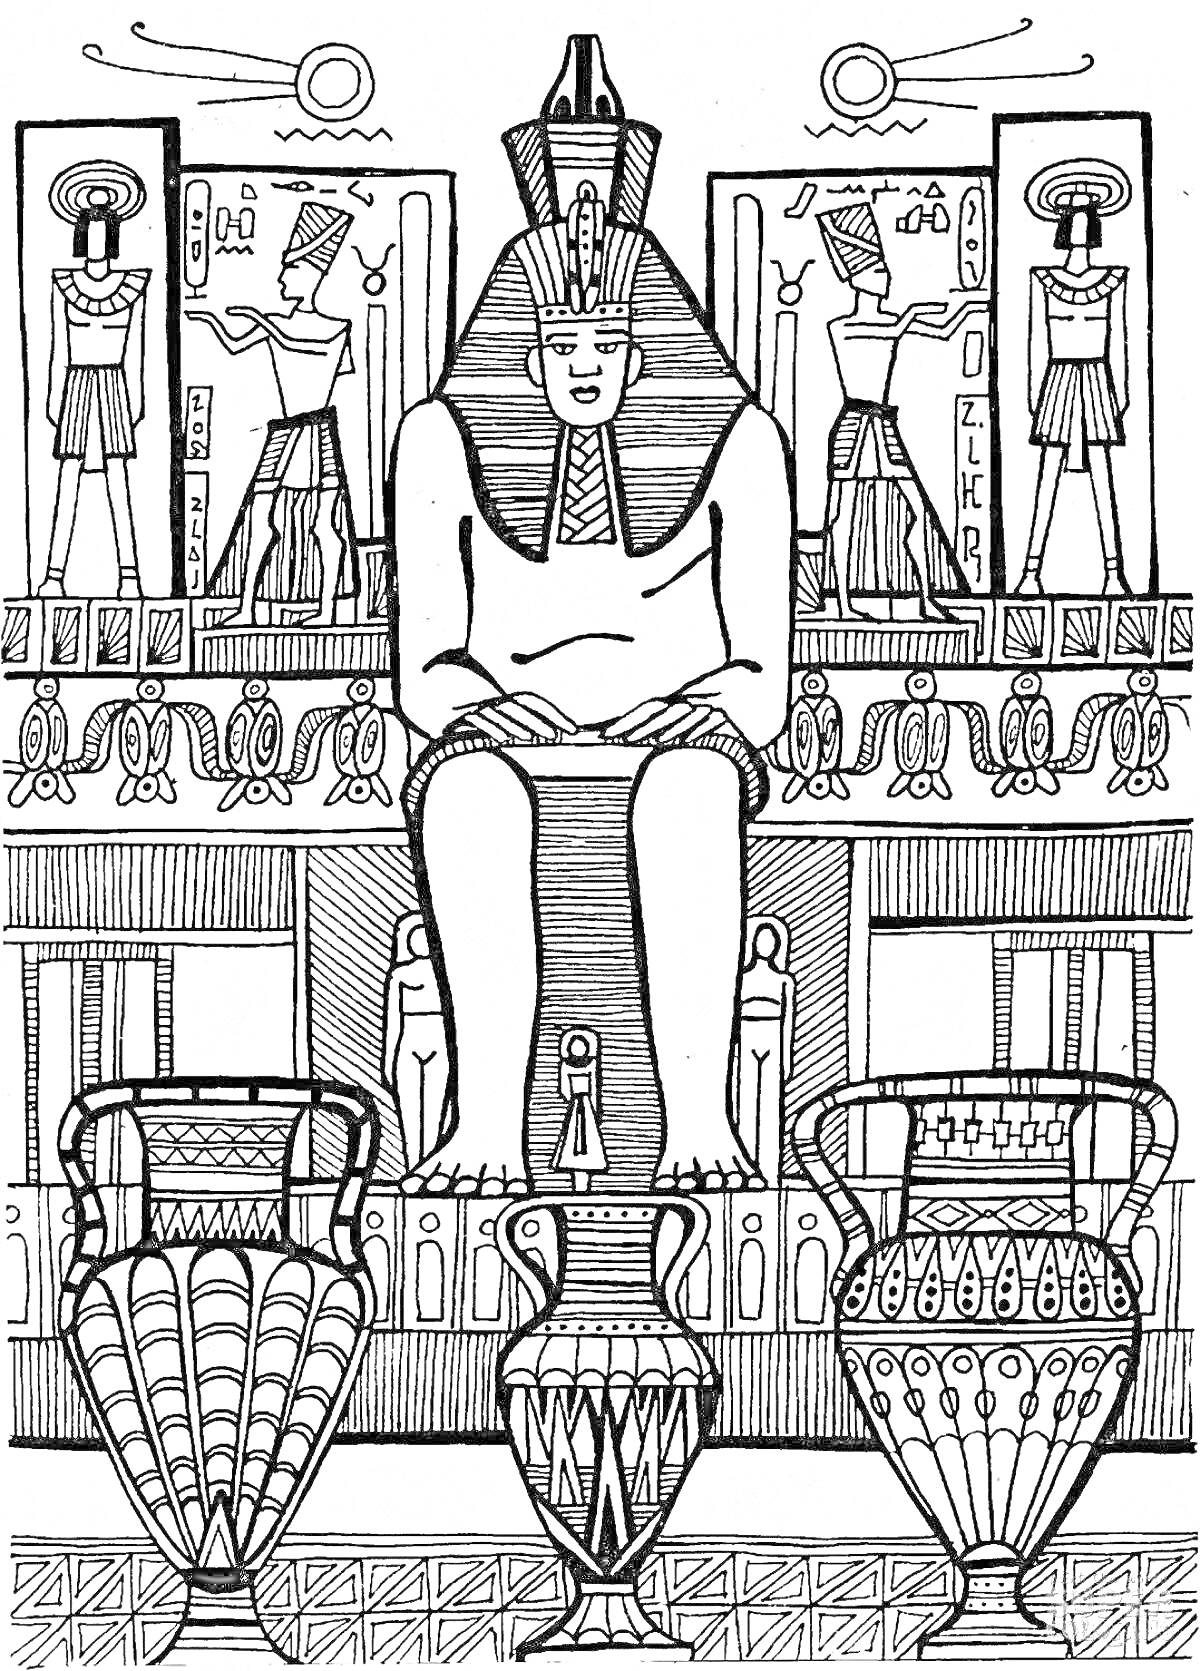 Раскраска Фараон на троне среди амфор и иероглифов